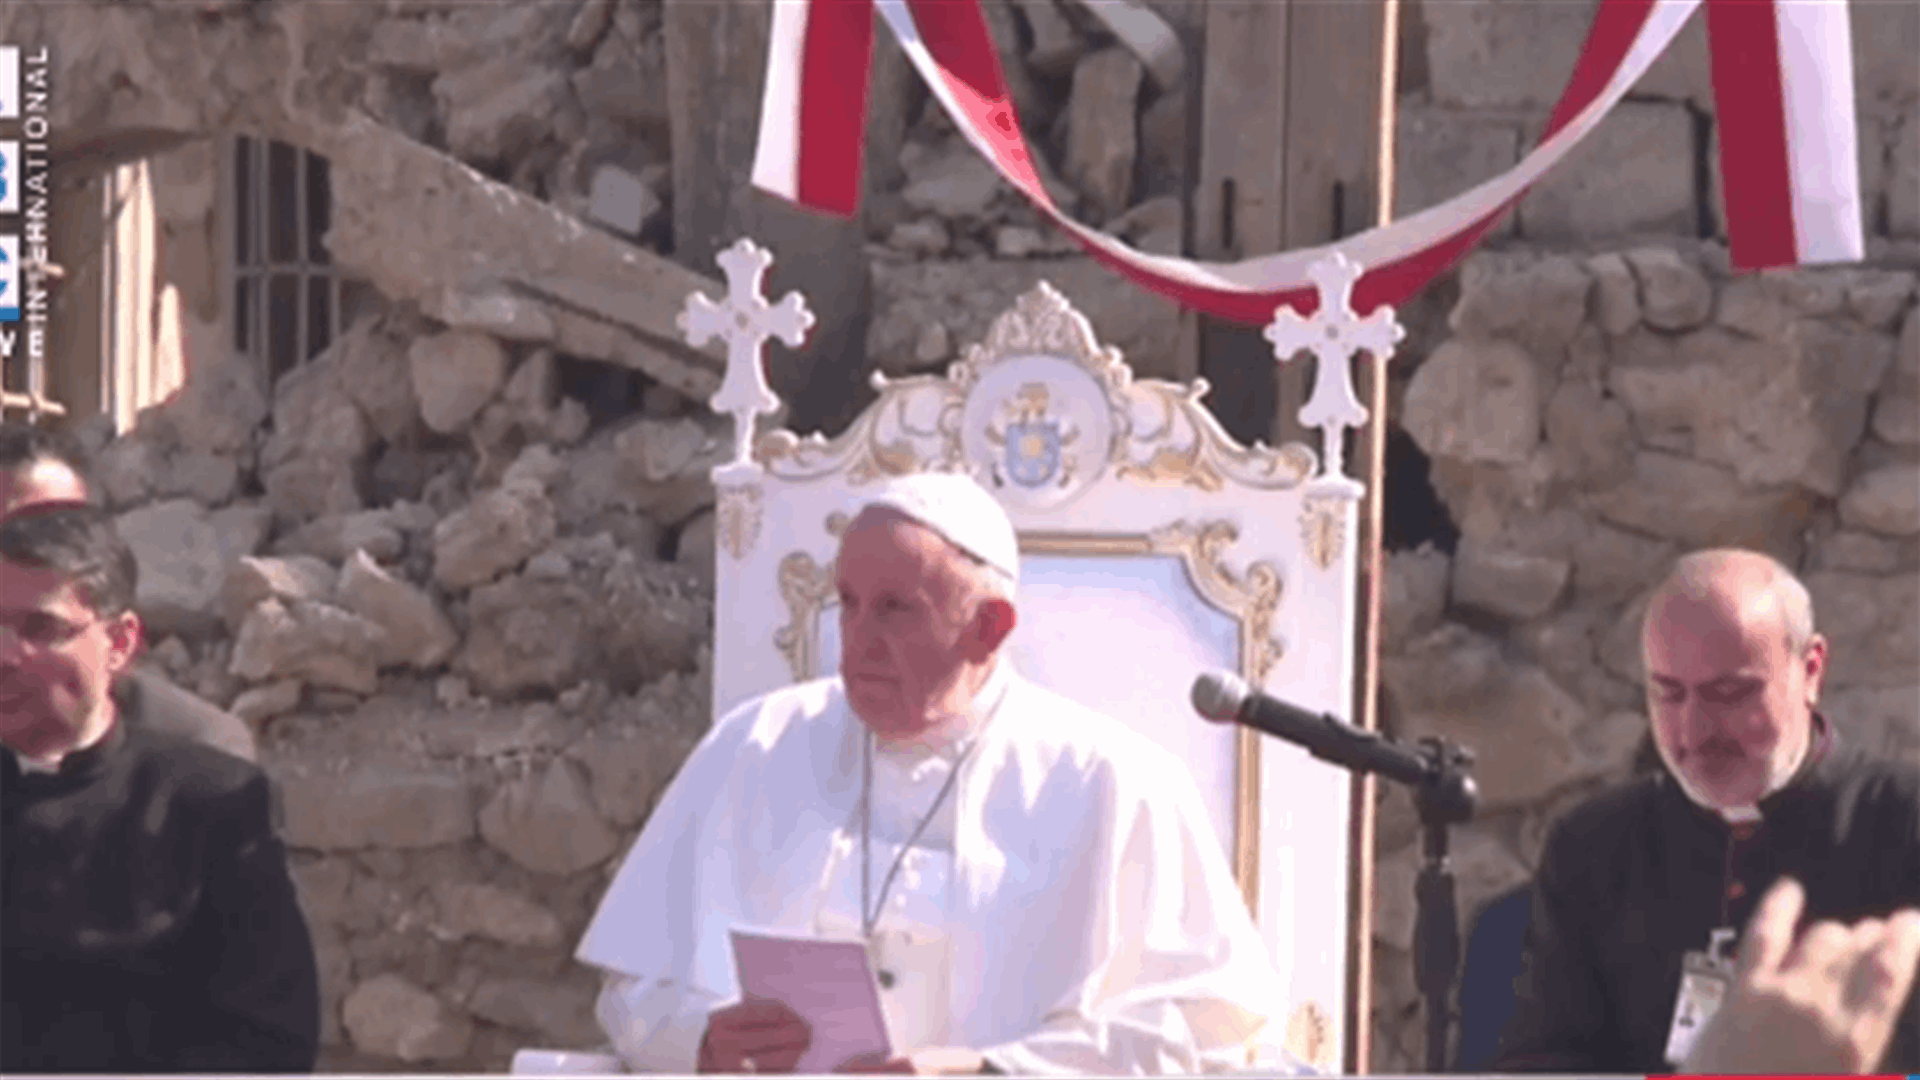 البابا فرنسيس يترأس الصلاة في حوش البيعة في الموصل على راحة نفس ضحايا الحرب